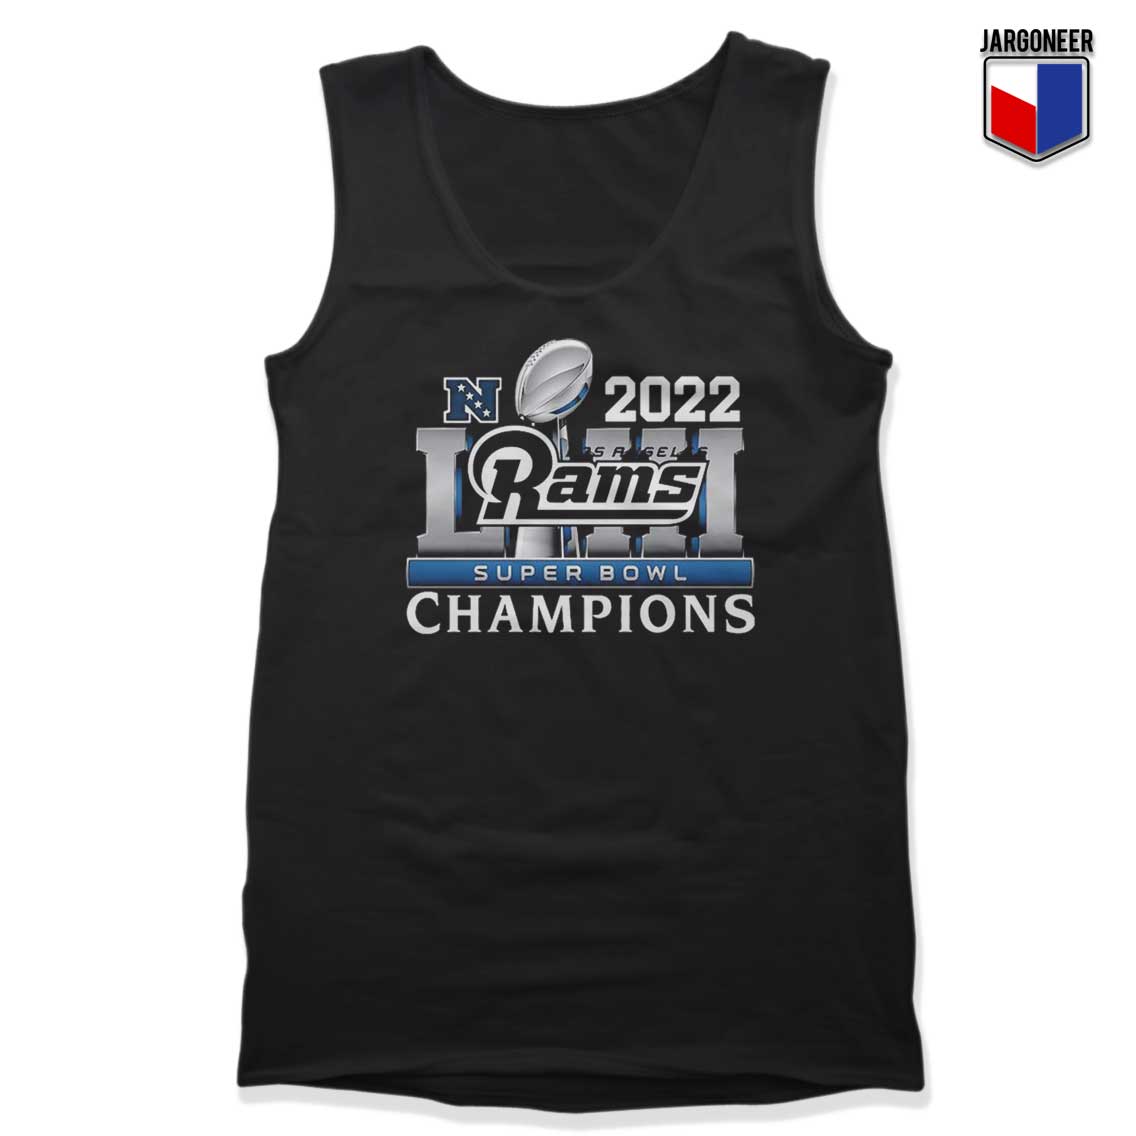 Los Angeles Rams Super Bowl Champions 2022 Tank Top - Shop Unique Graphic Cool Shirt Designs